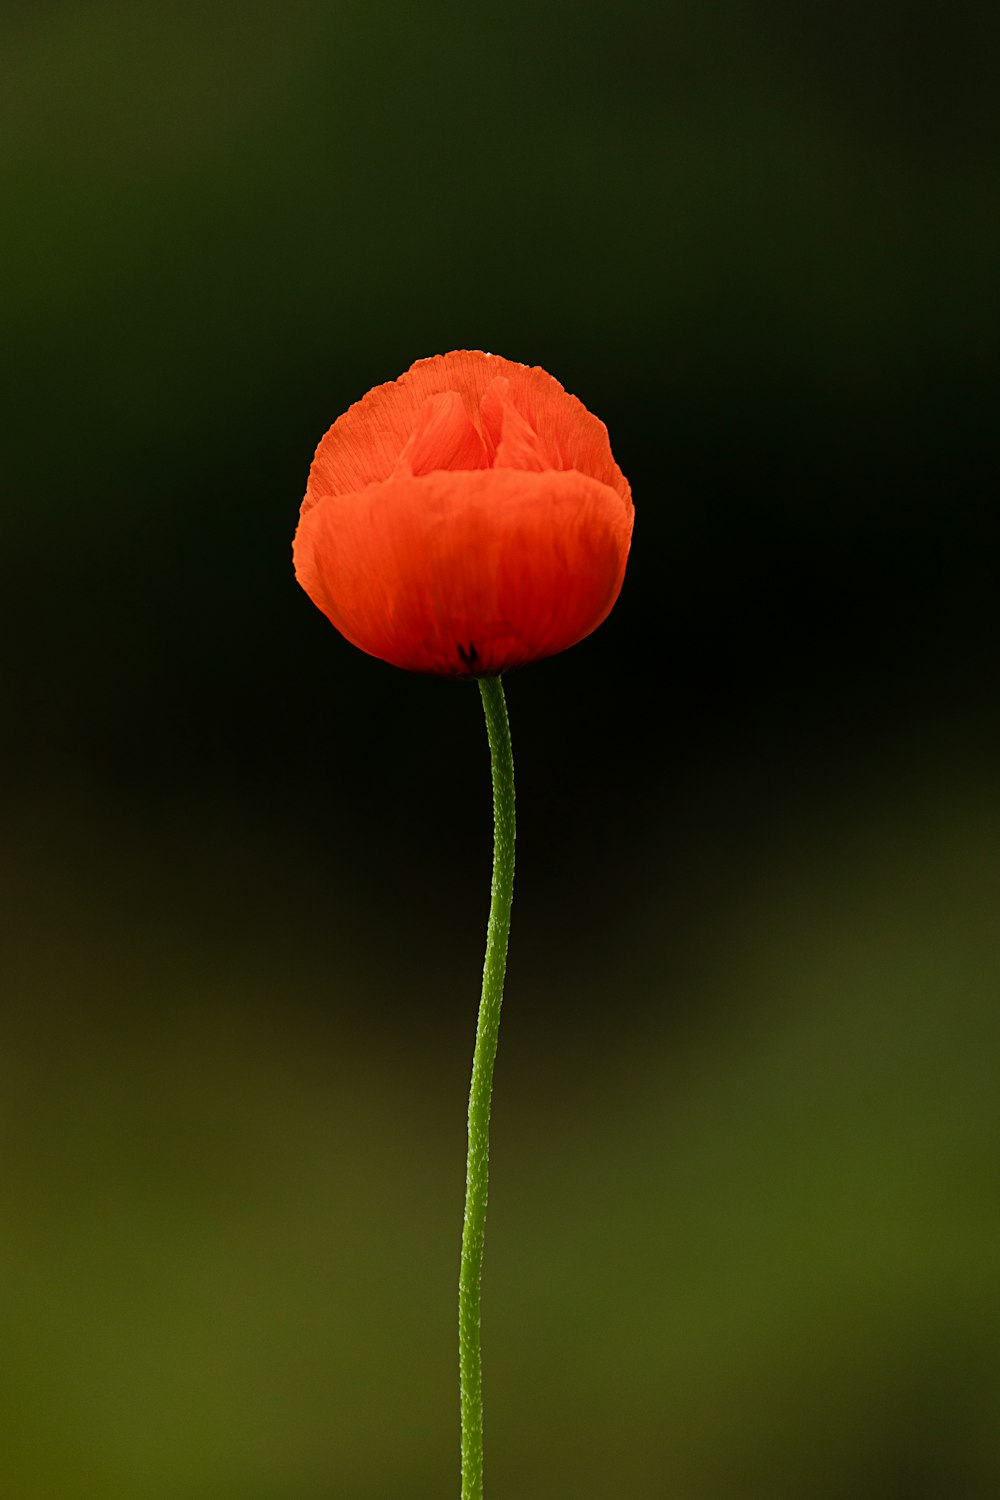 flor de laranja no caule verde